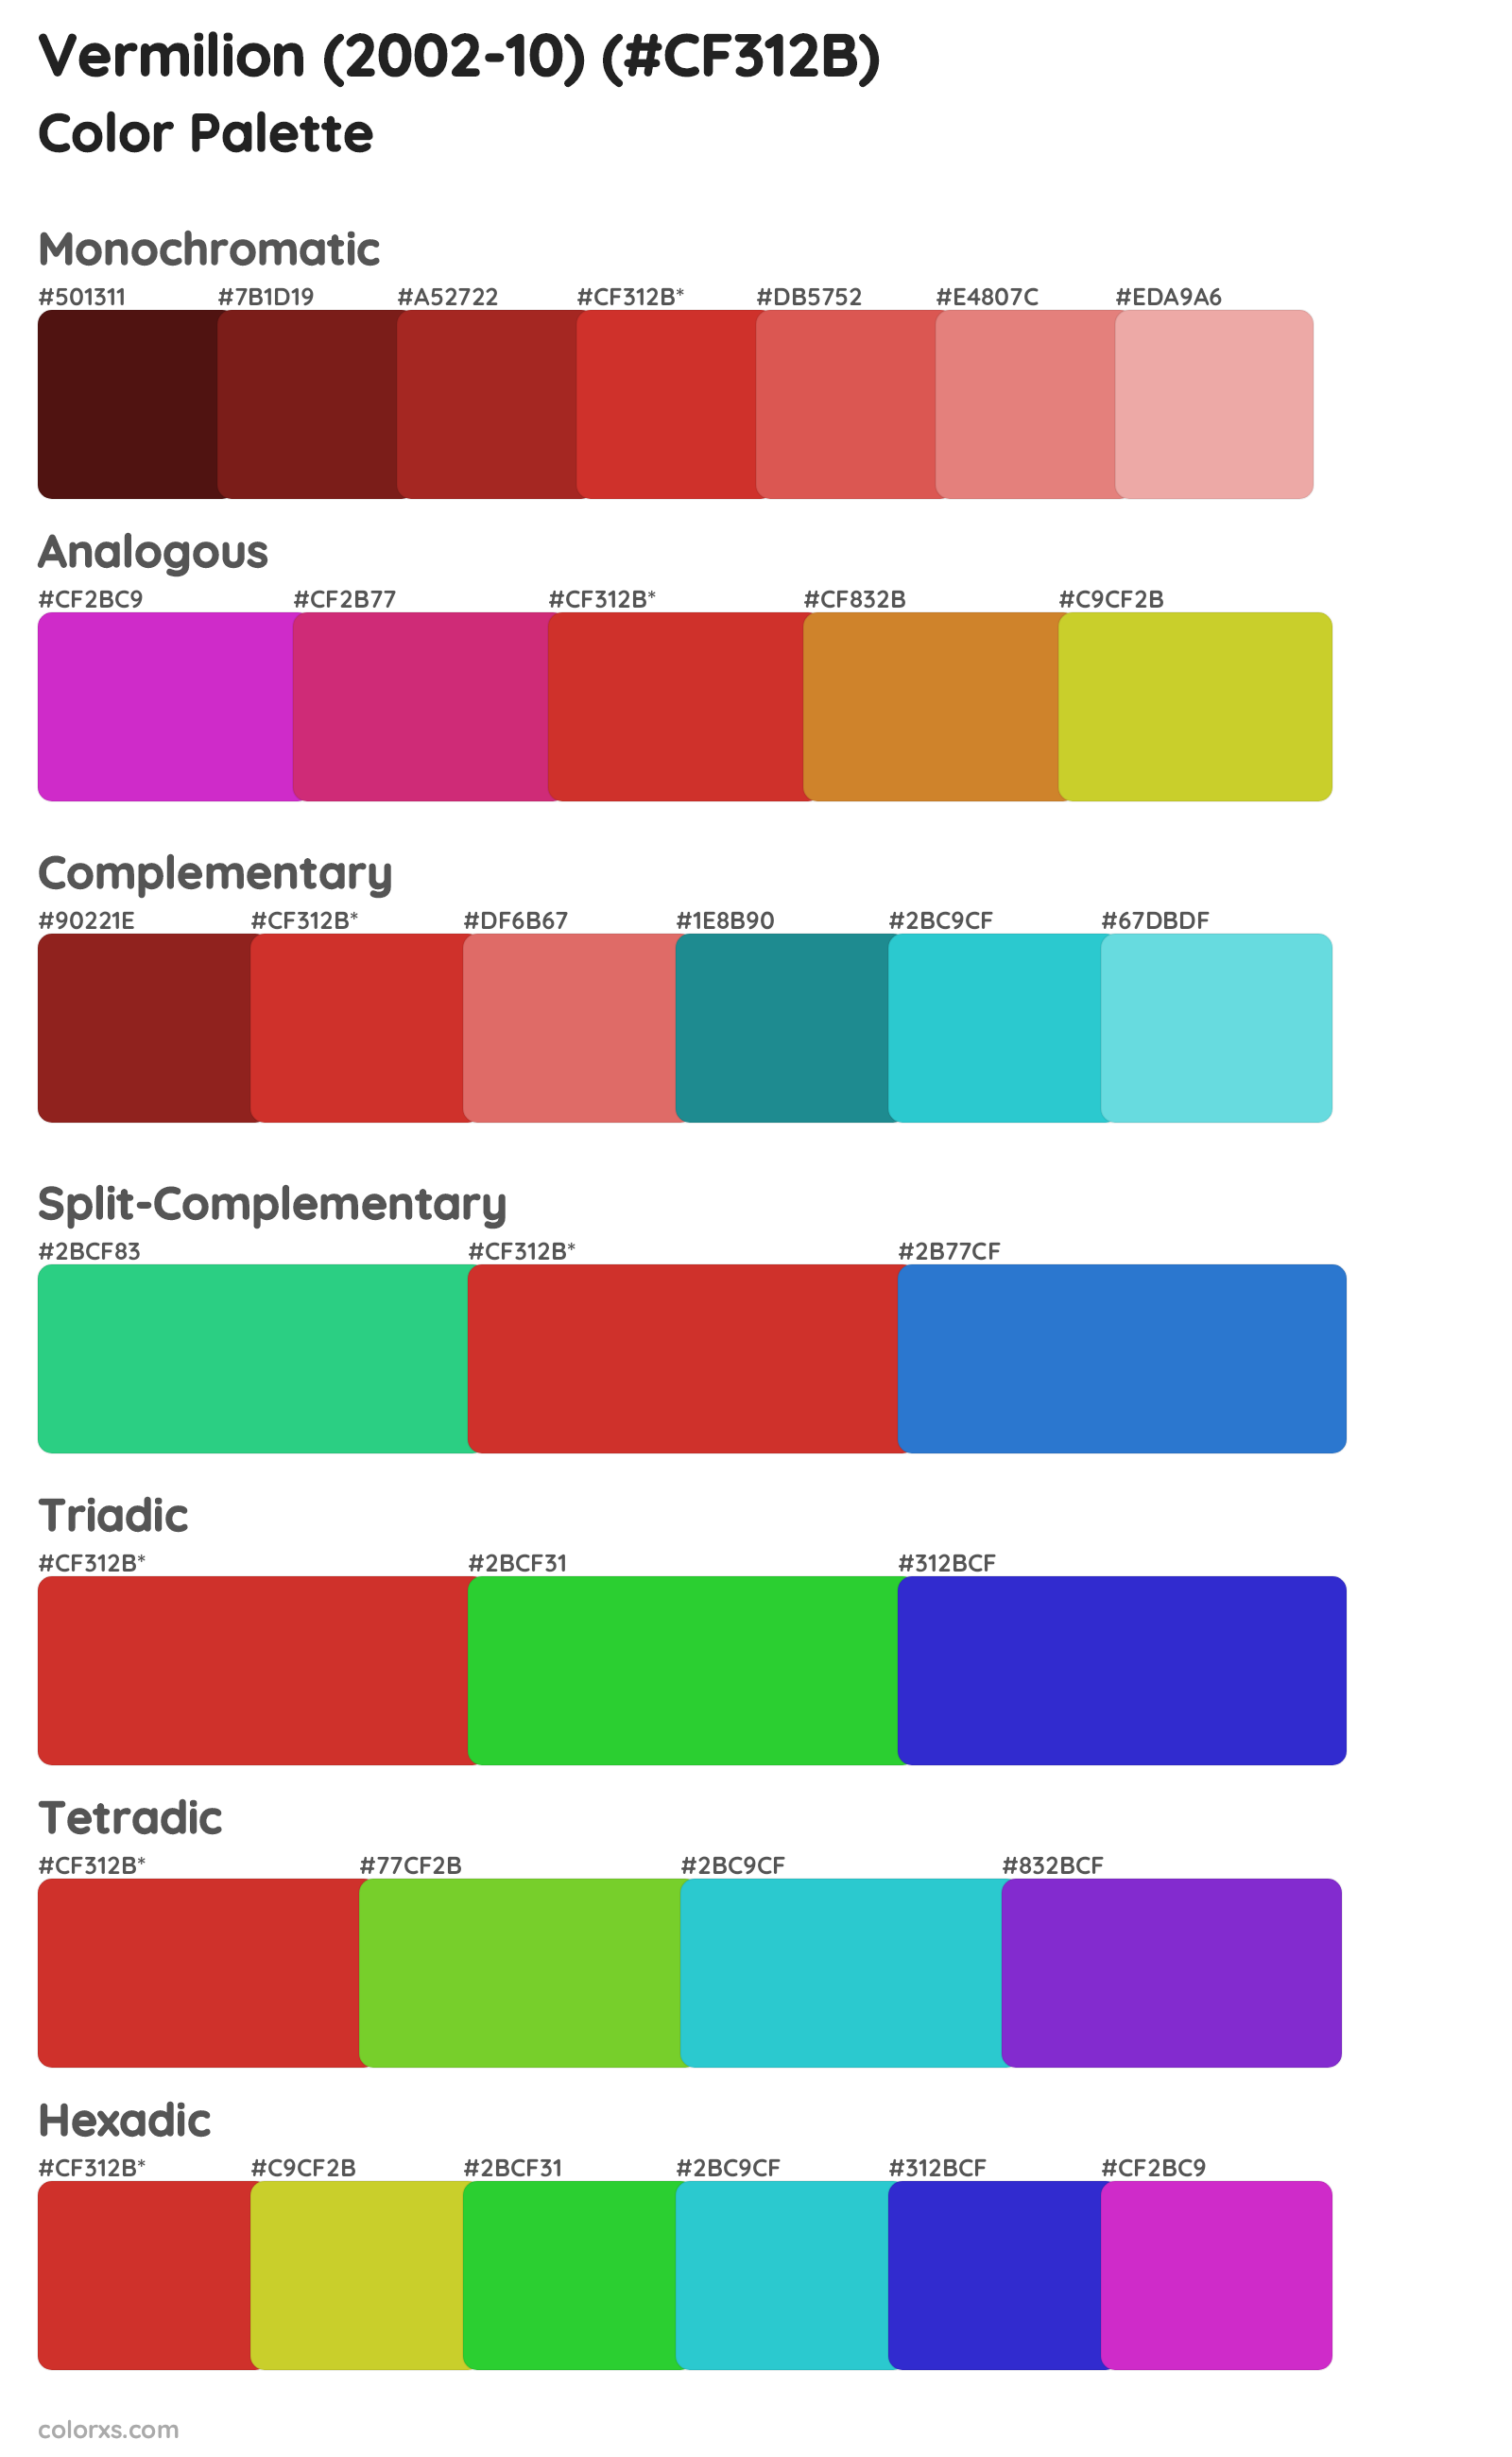 Vermilion (2002-10) Color Scheme Palettes